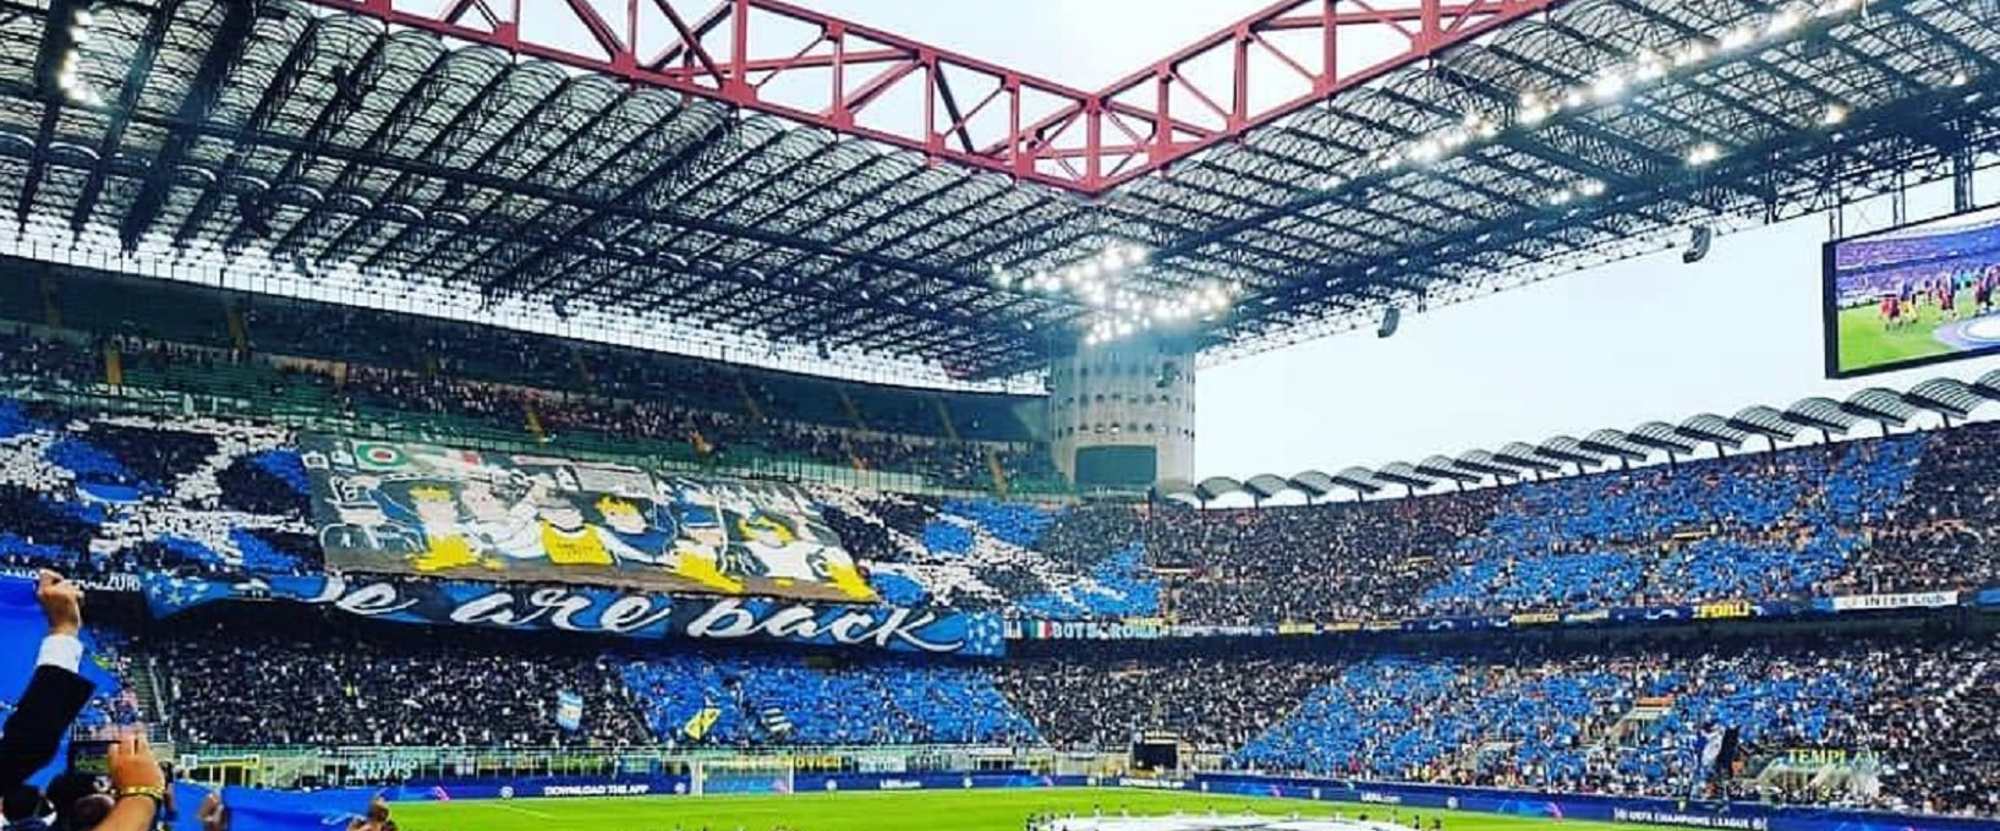 Inter Milan v Genoa C.F.C.